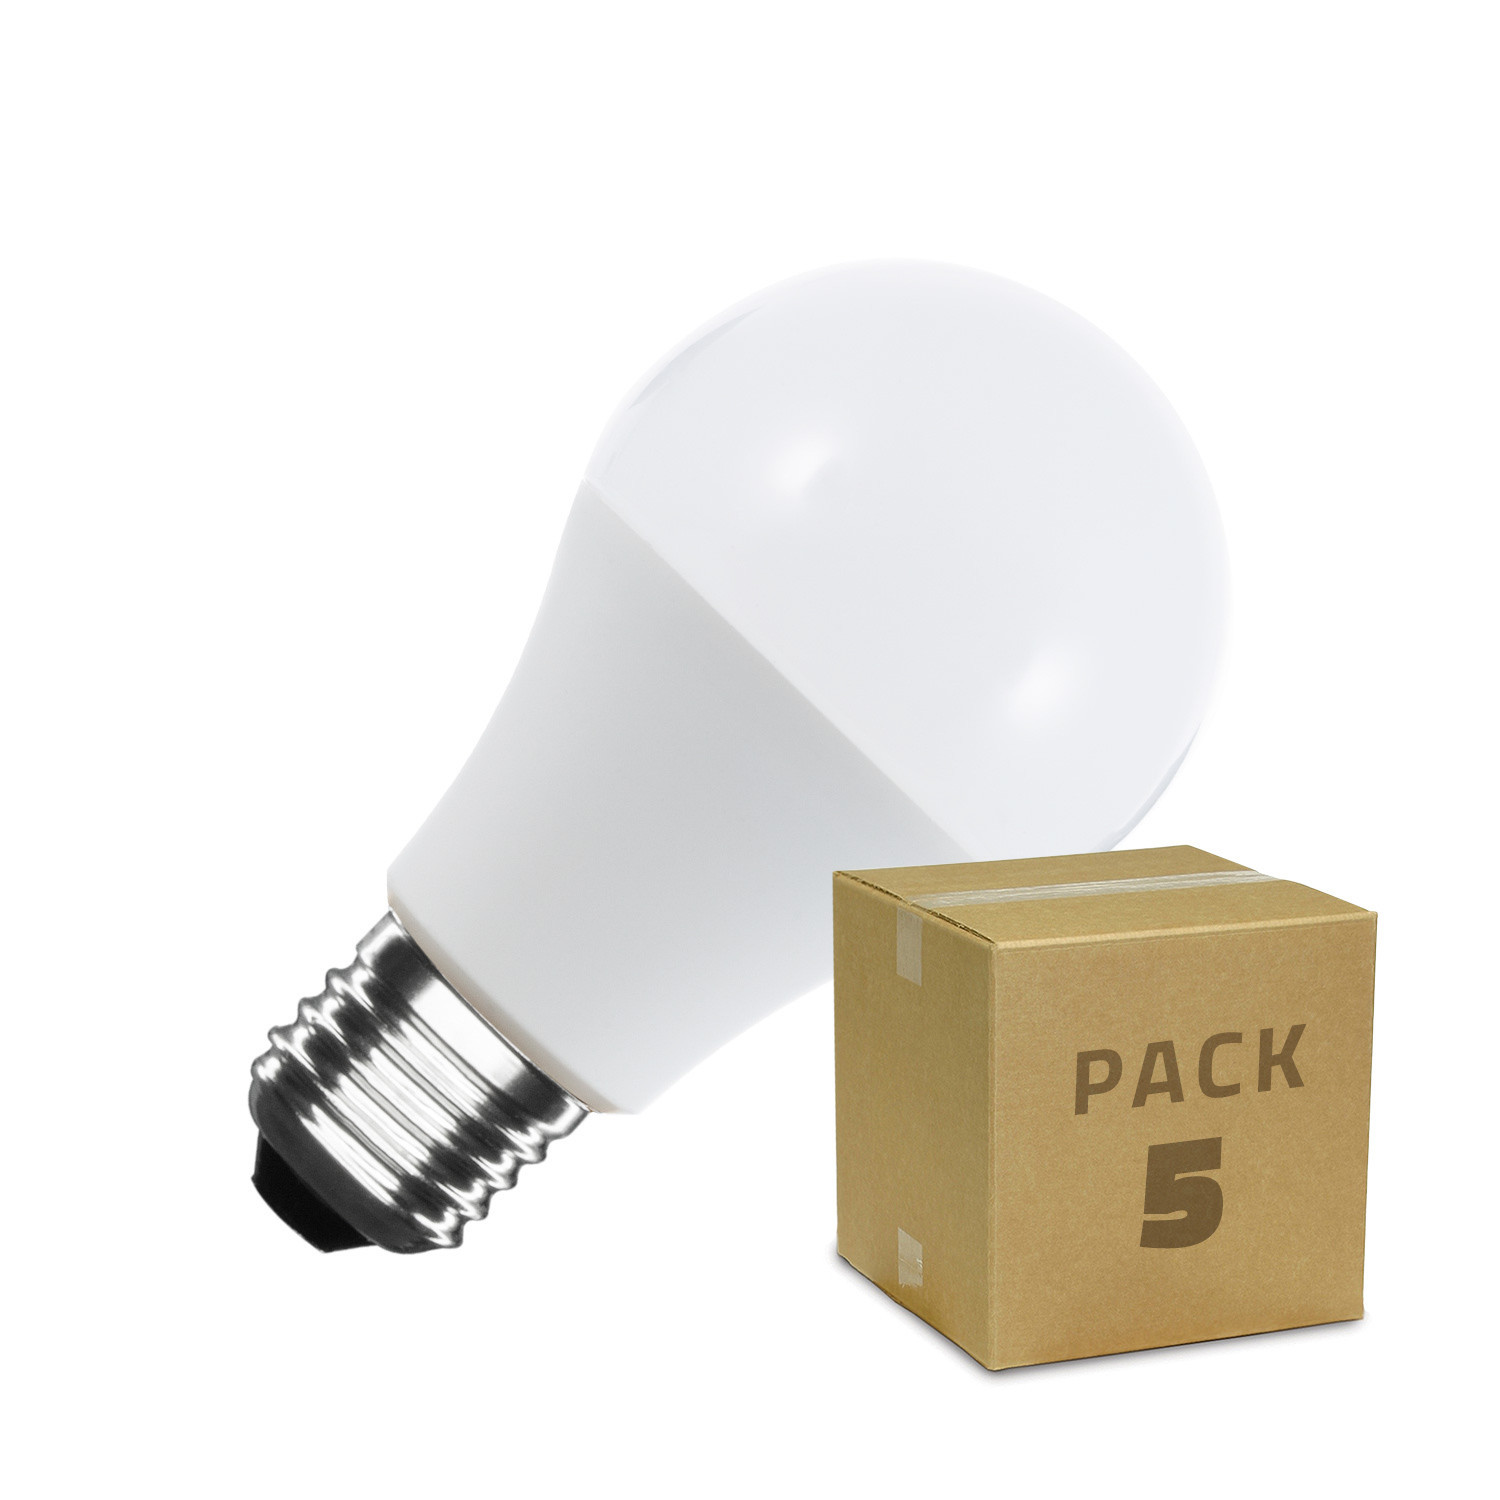 Pack 5 Bombillas LED A60 6W esferica E27 600Lm bajo consumo LED26